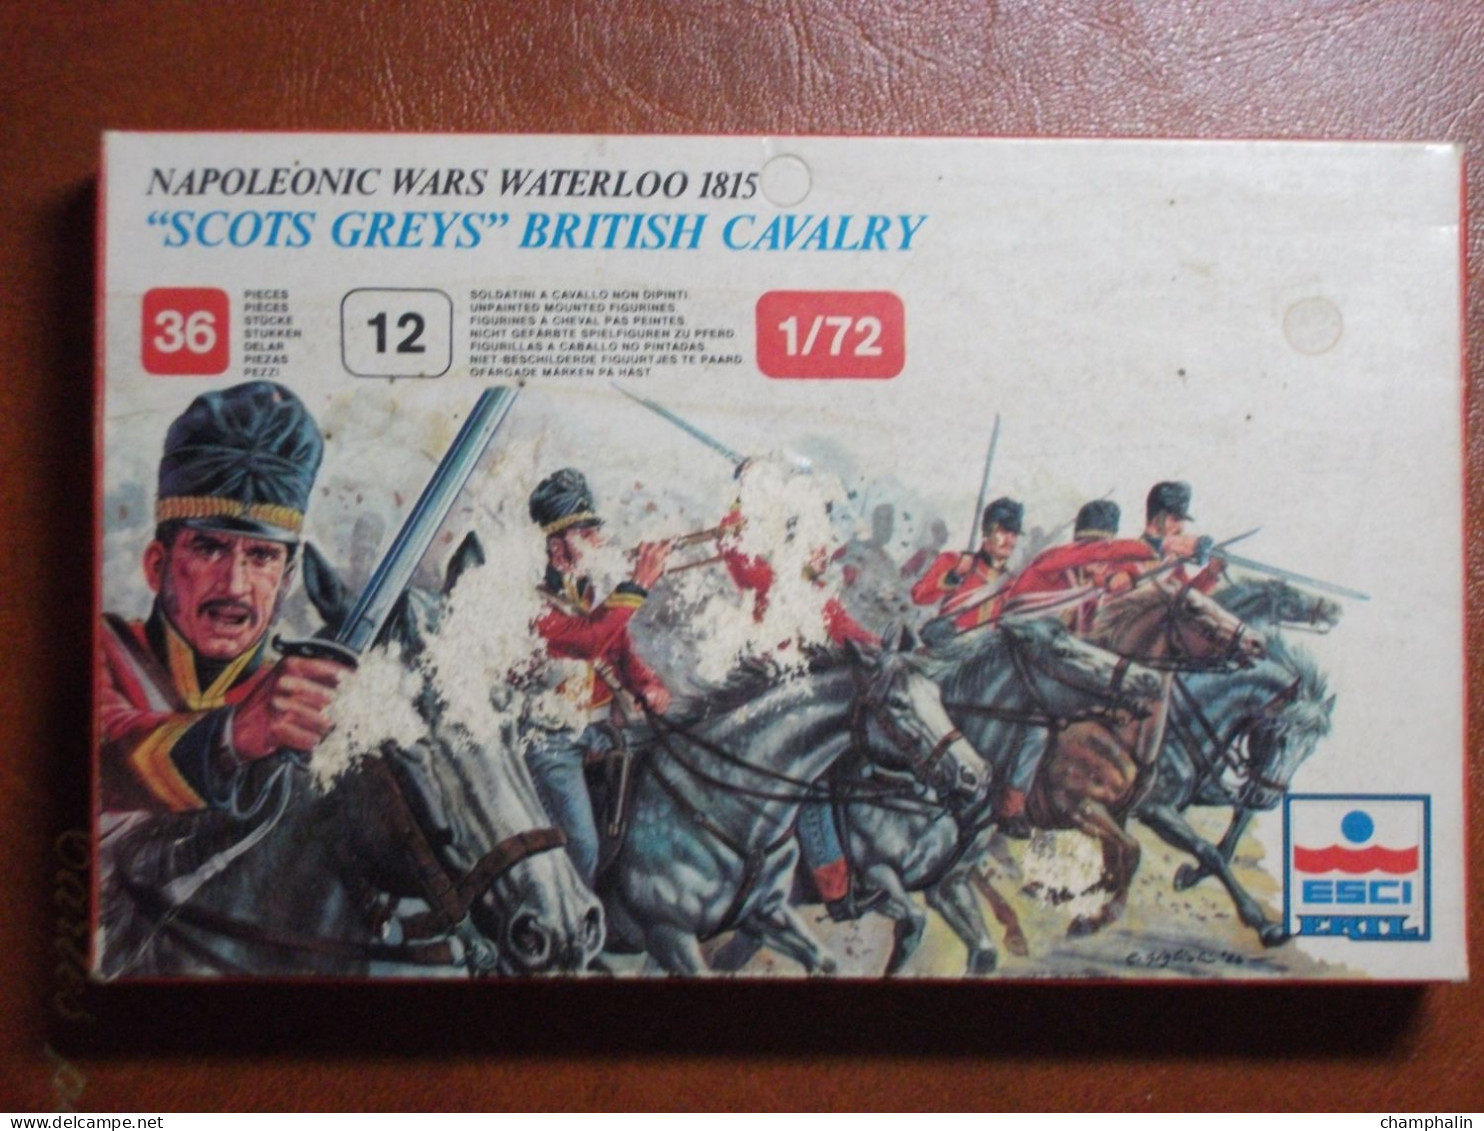 Maquette Plastique - Scots Grey British Cavalry Waterloo 1815 Au 1/72 - Guerres Napoléoniennes - Esci N°217 - Figurines